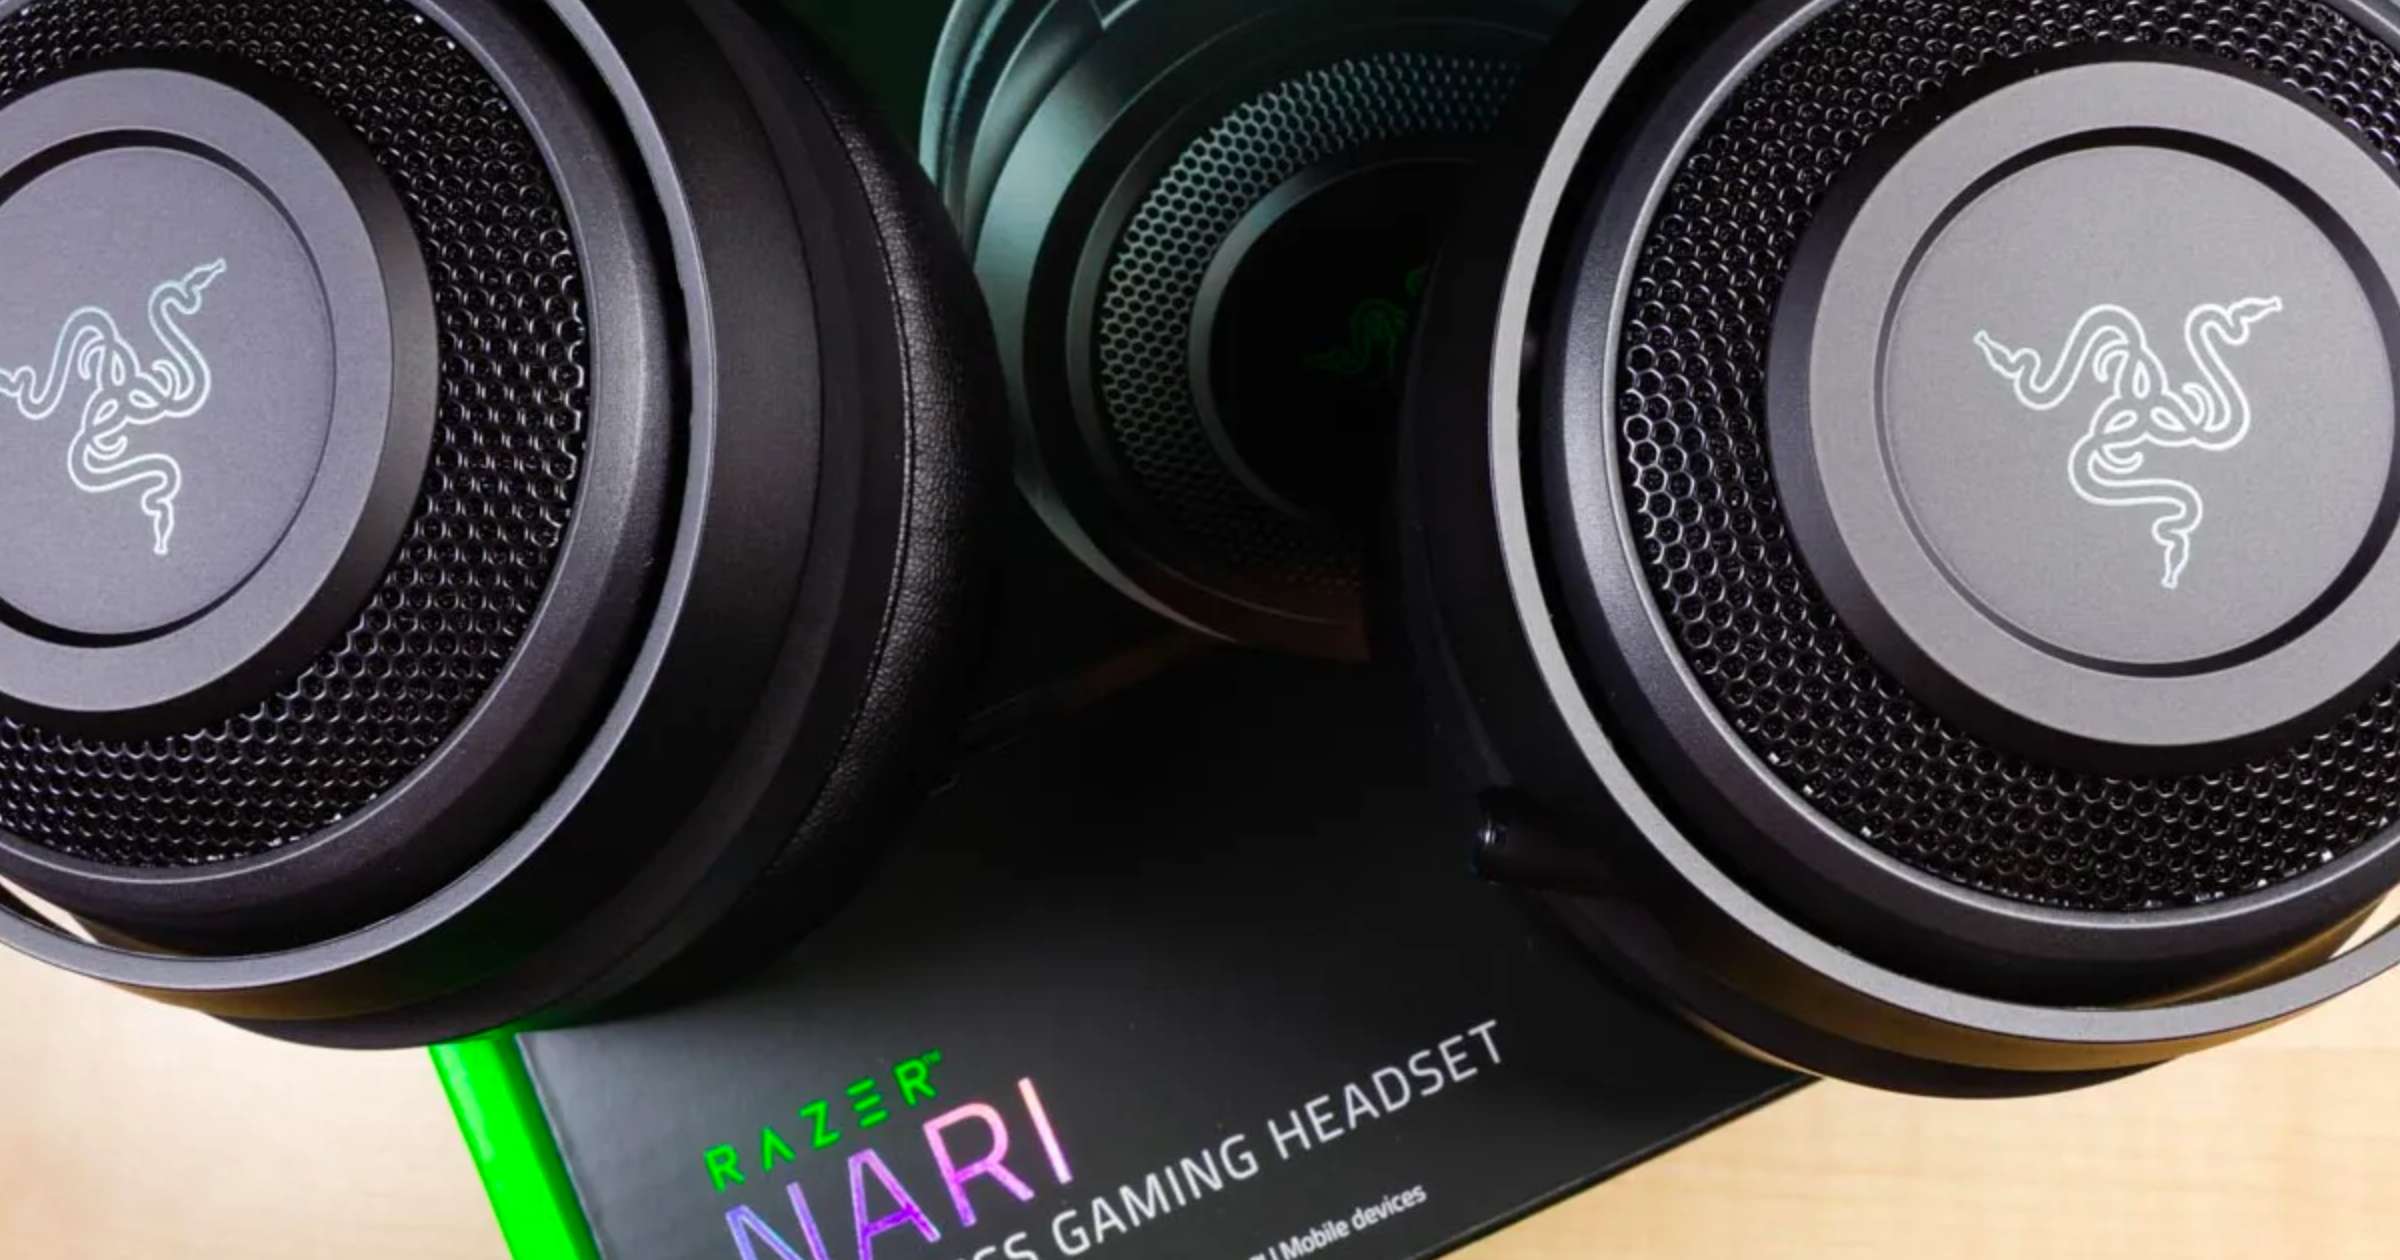 Razer Nari Essential Wireless Gaming Headset